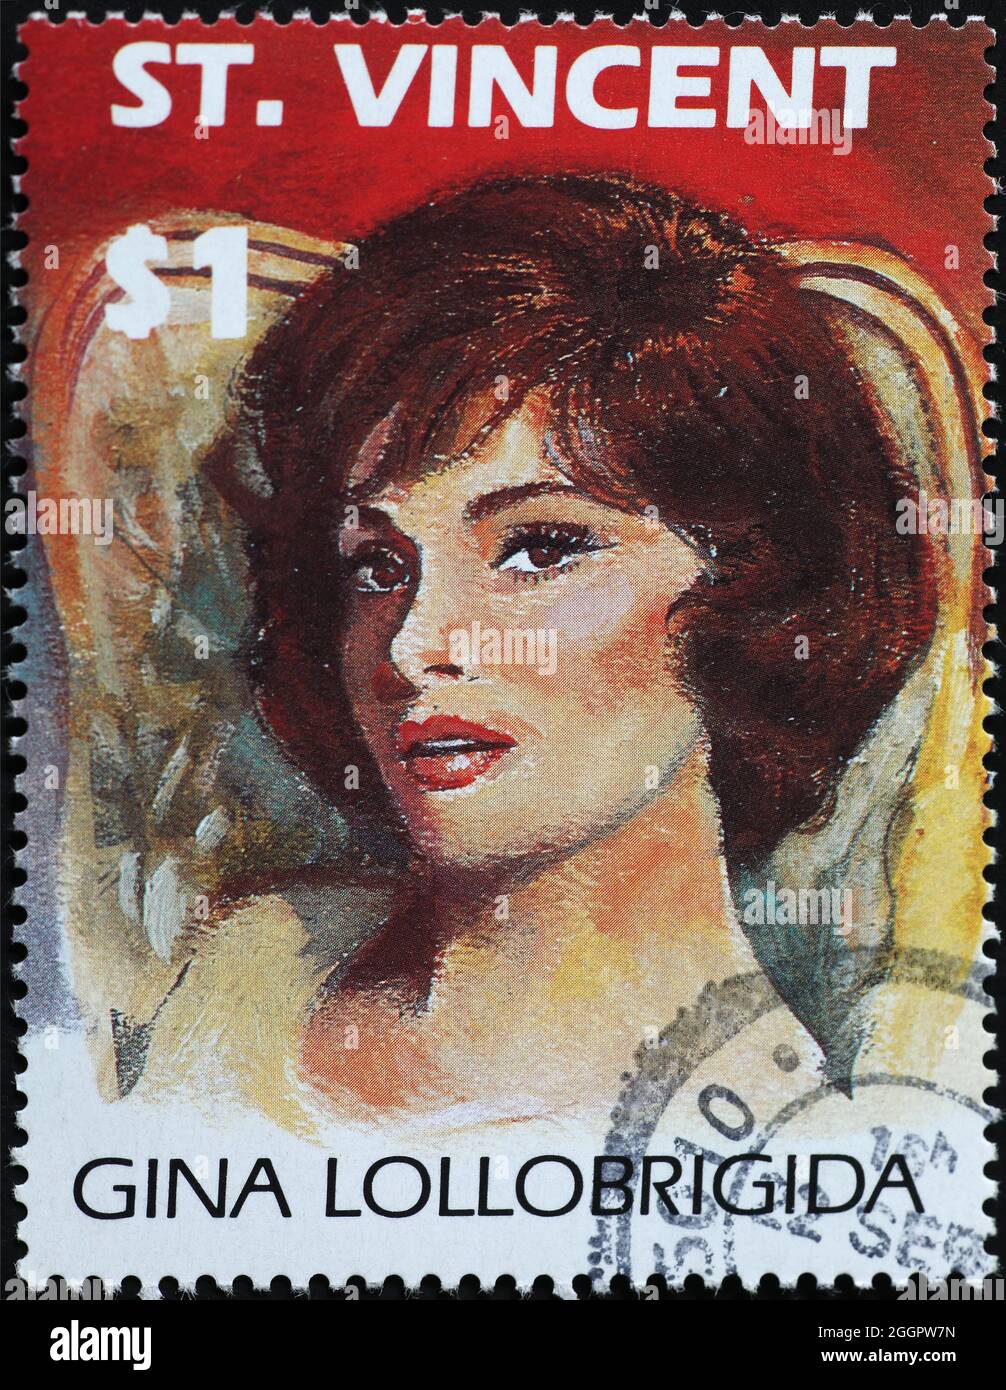 Gina Lollobrigida retrato en sello postal Foto de stock